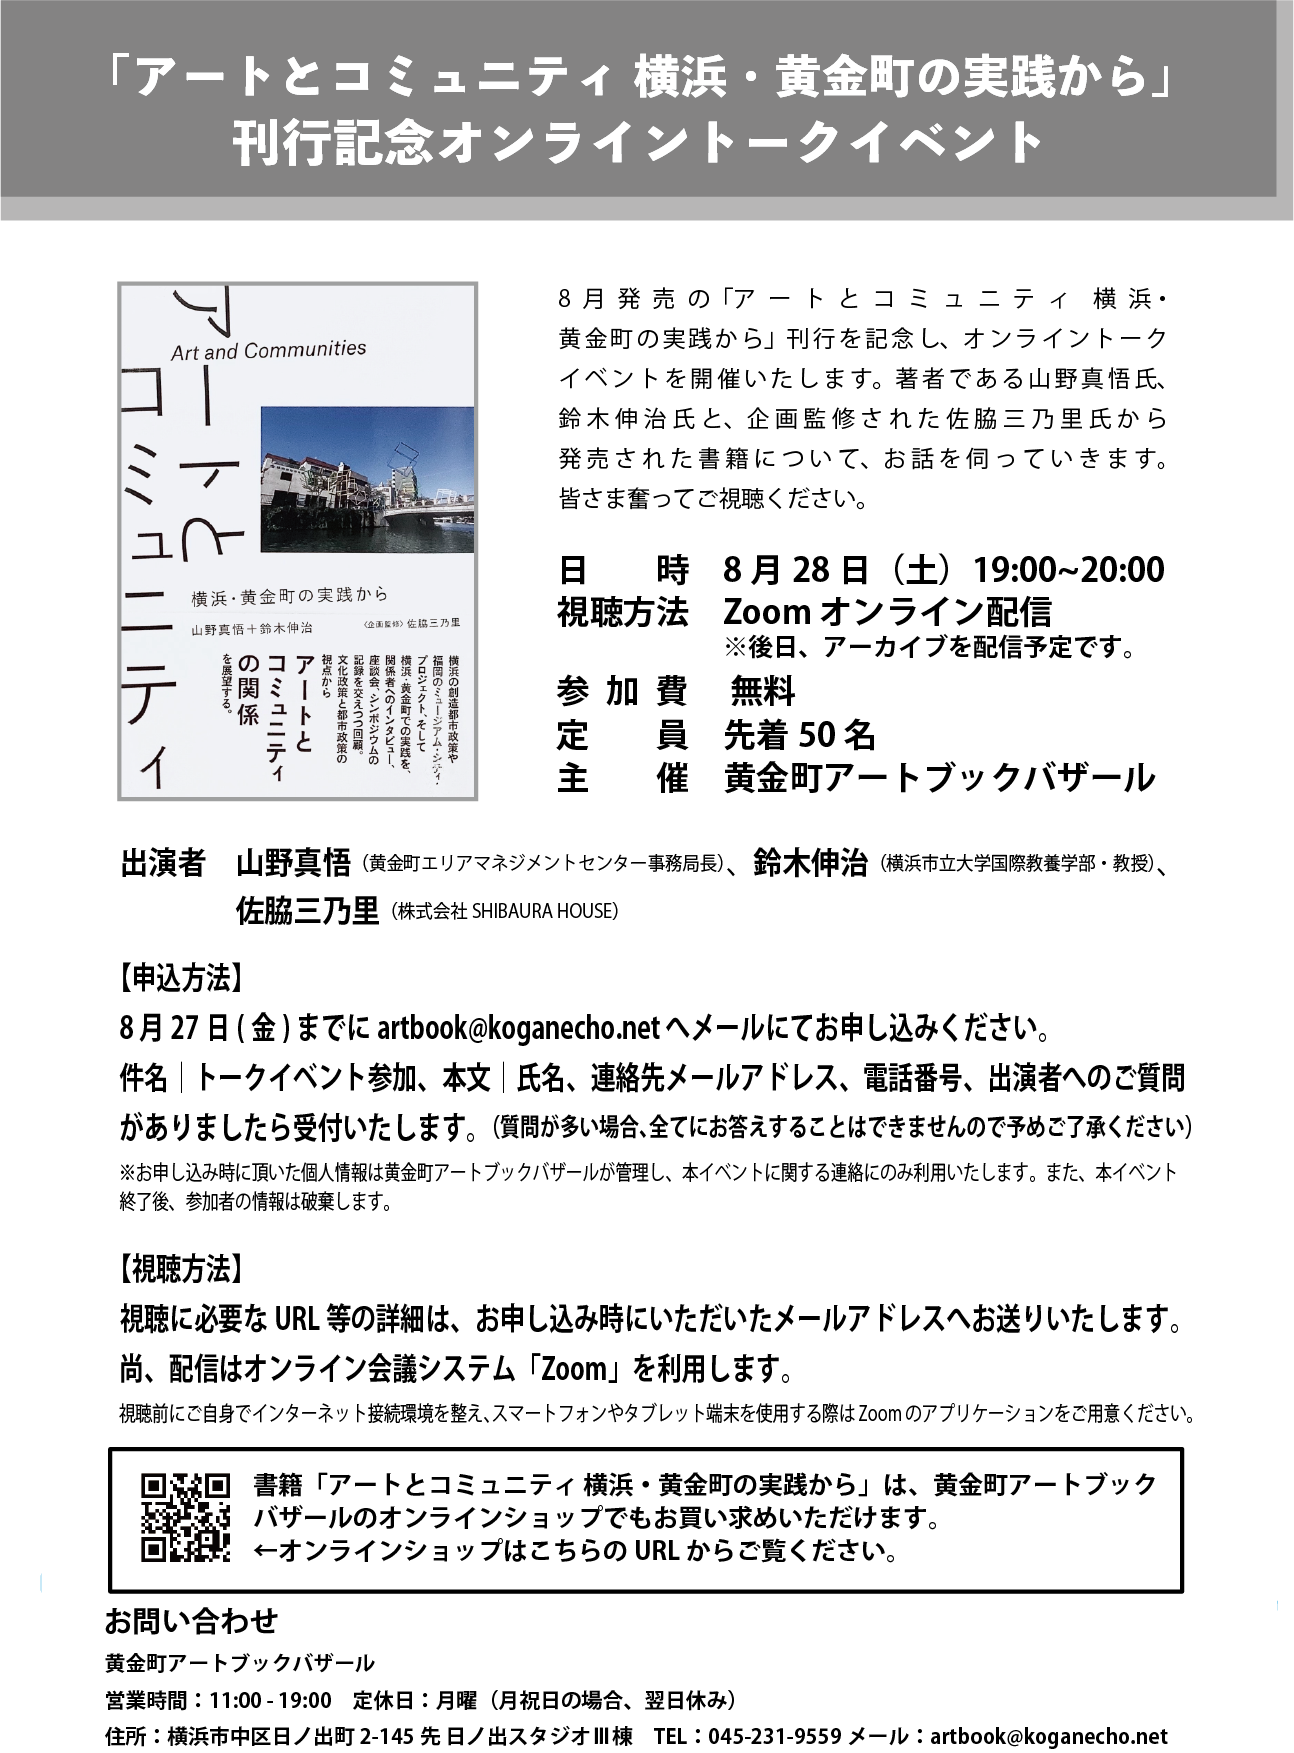 「アートとコミュニティ 横浜・黄金町の実践から」刊行記念オンライントークイベント開催のお知らせ